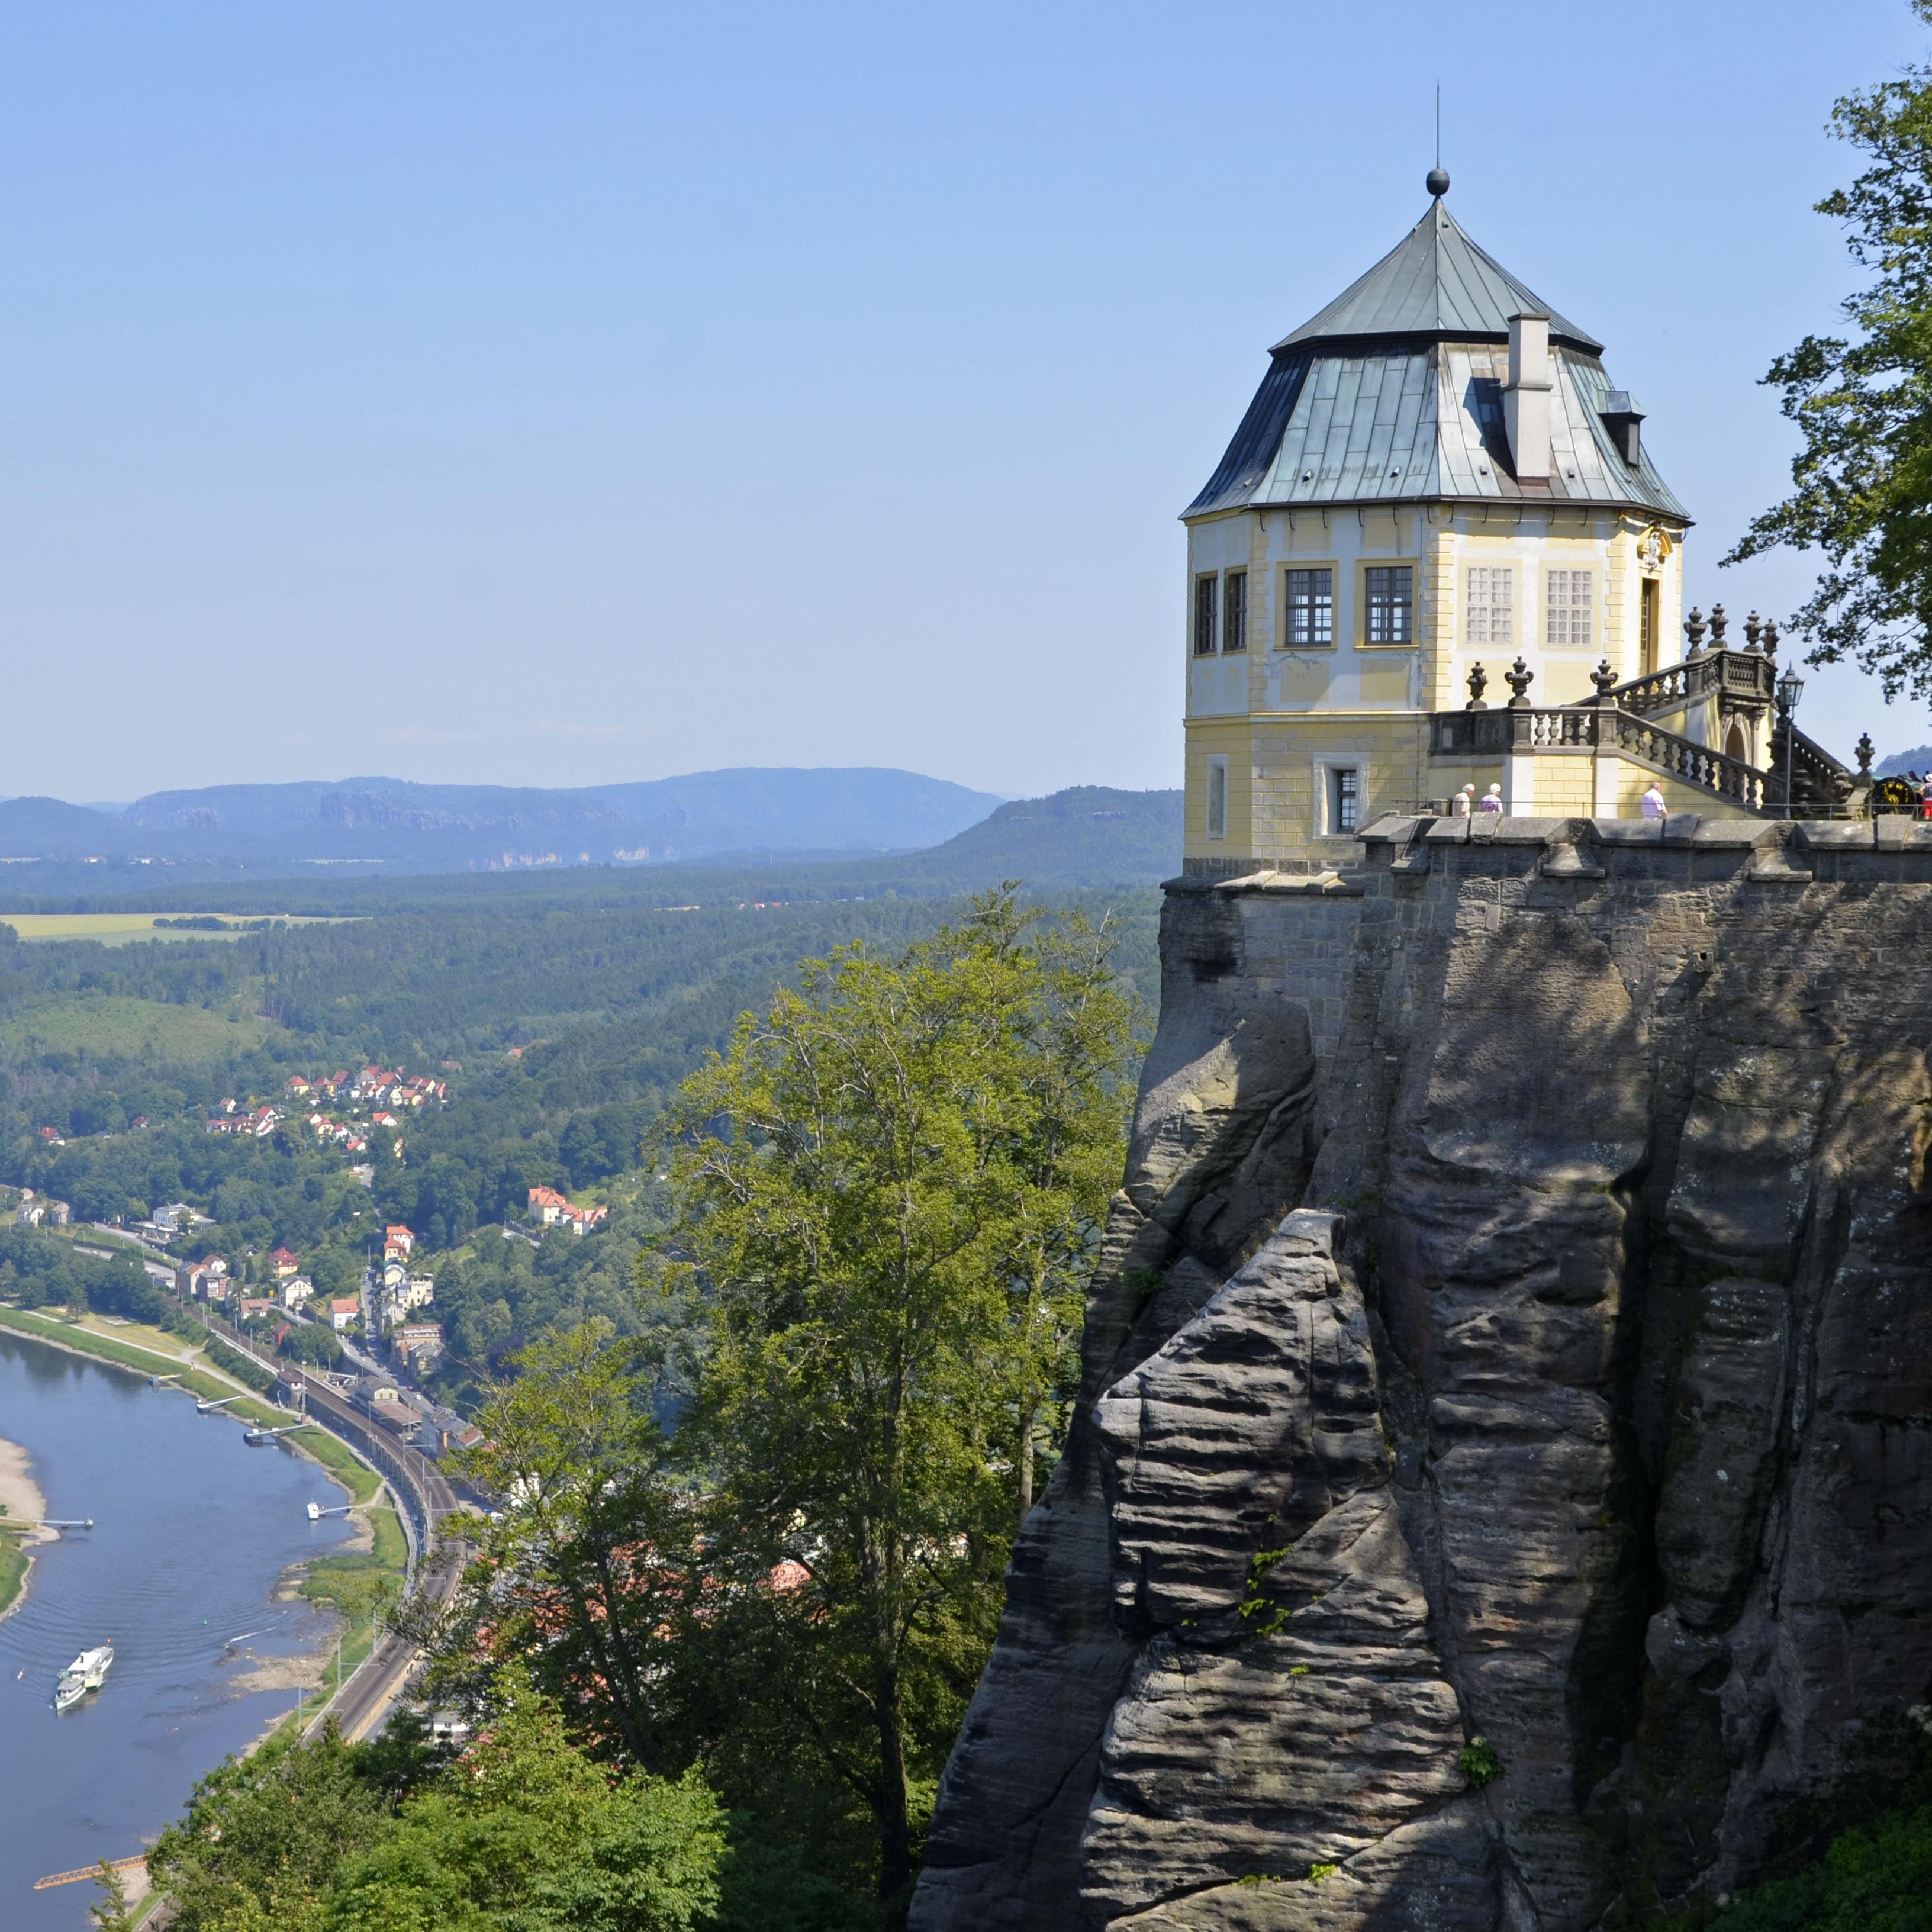 Blick auf die Festung Königstein mit der Friedrichsburg sowie das Elbtal.